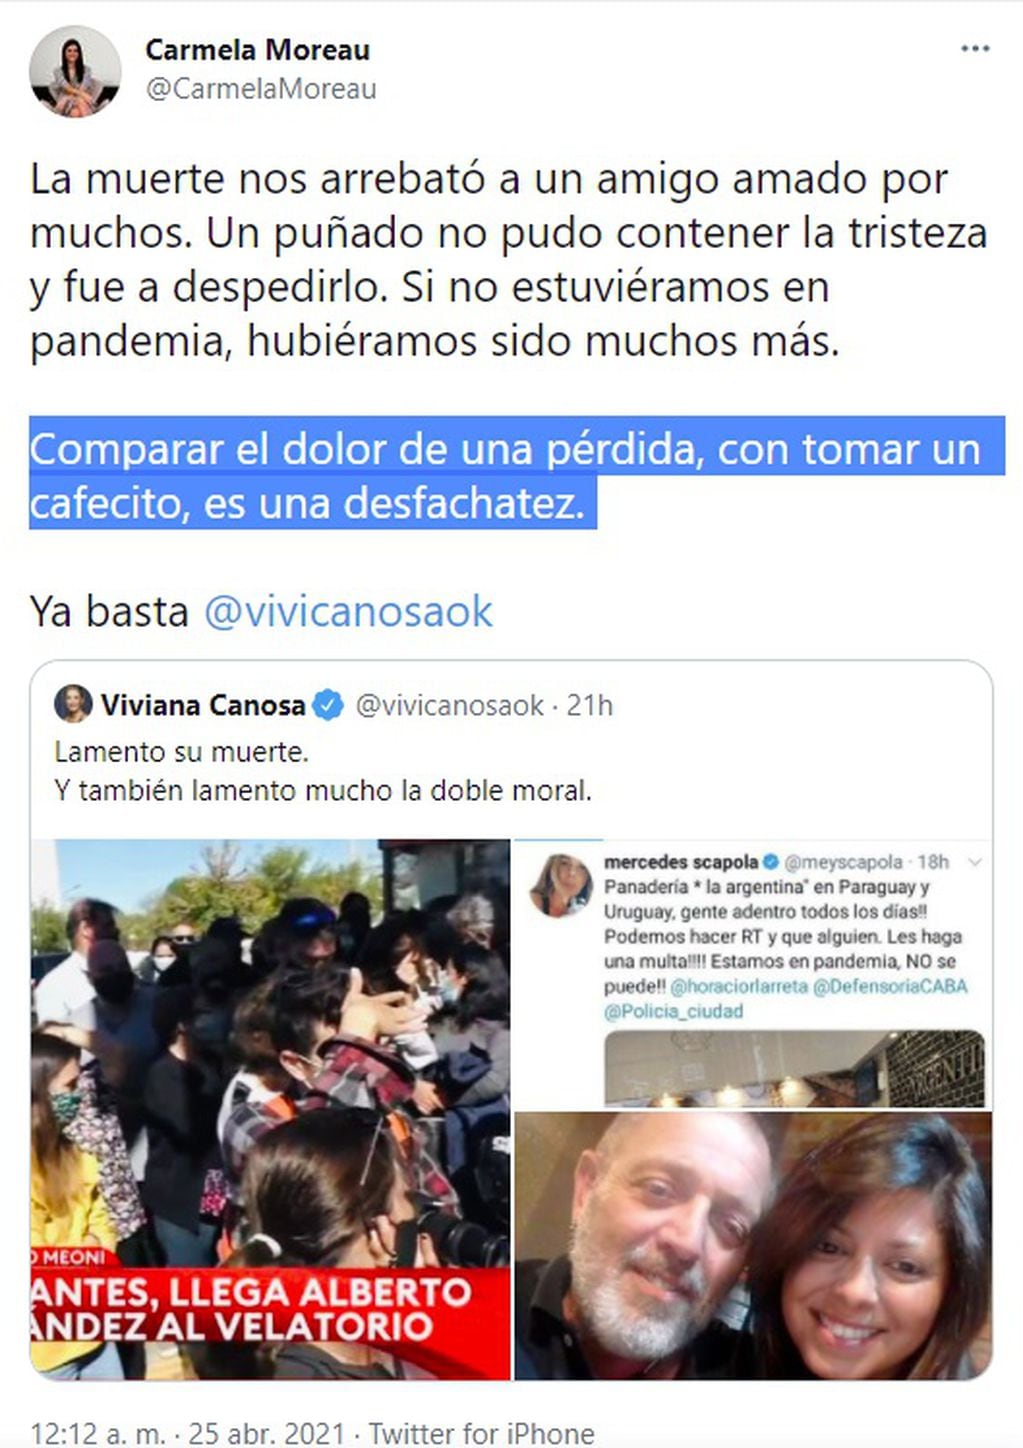 Cruce tuitero entre Viviana Canosa y Carmela Moreau por el velatorio de Mario Meoni